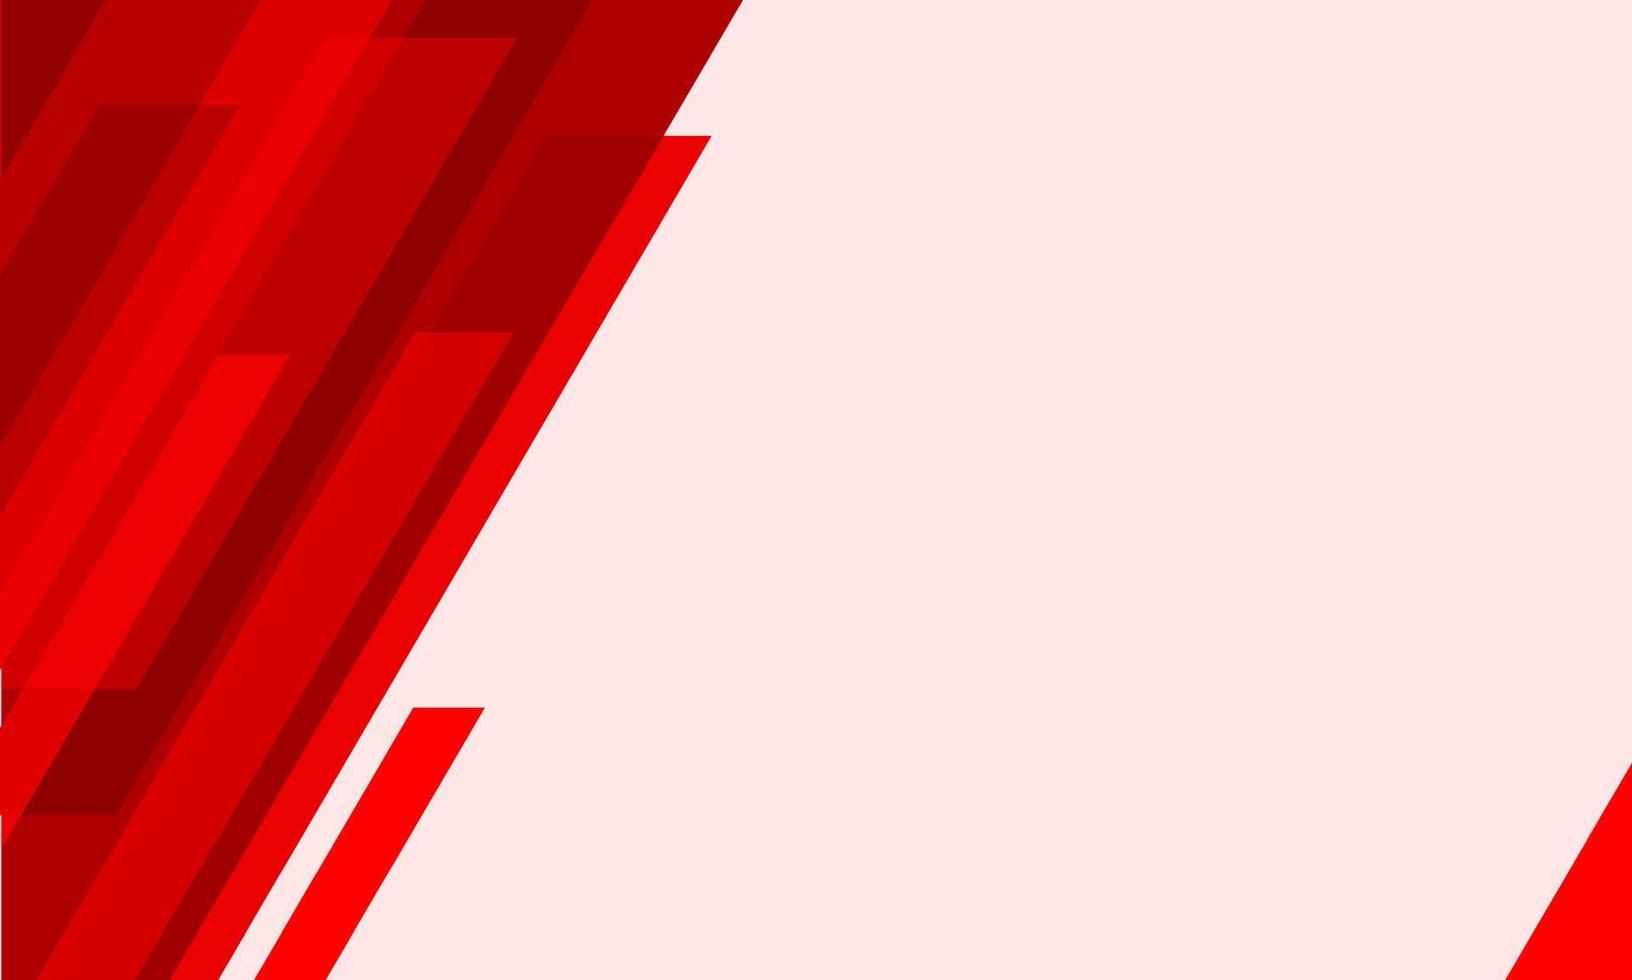 diseño de fondo moderno abstracto. fondo rojo con formas geométricas. vector de líneas abstractas. ilustración con espacio para texto. cartel, volante, tarjeta, diseño de plantilla de banner